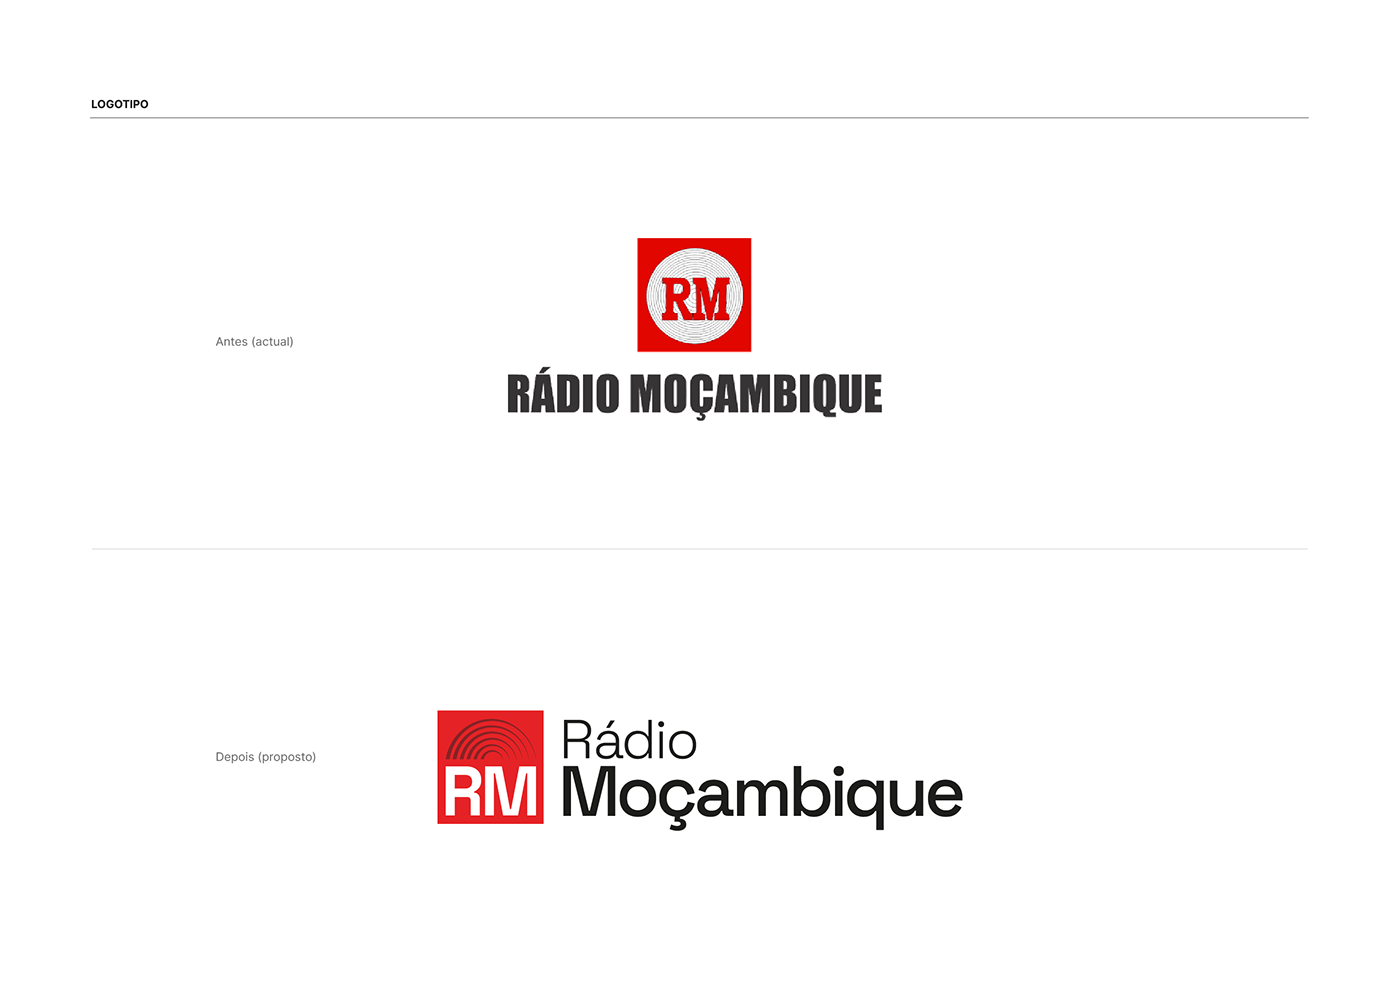 Brand Design brand identity visual identity mozambique design adobe illustrator moçambique colors Graphic Designer identidade visual